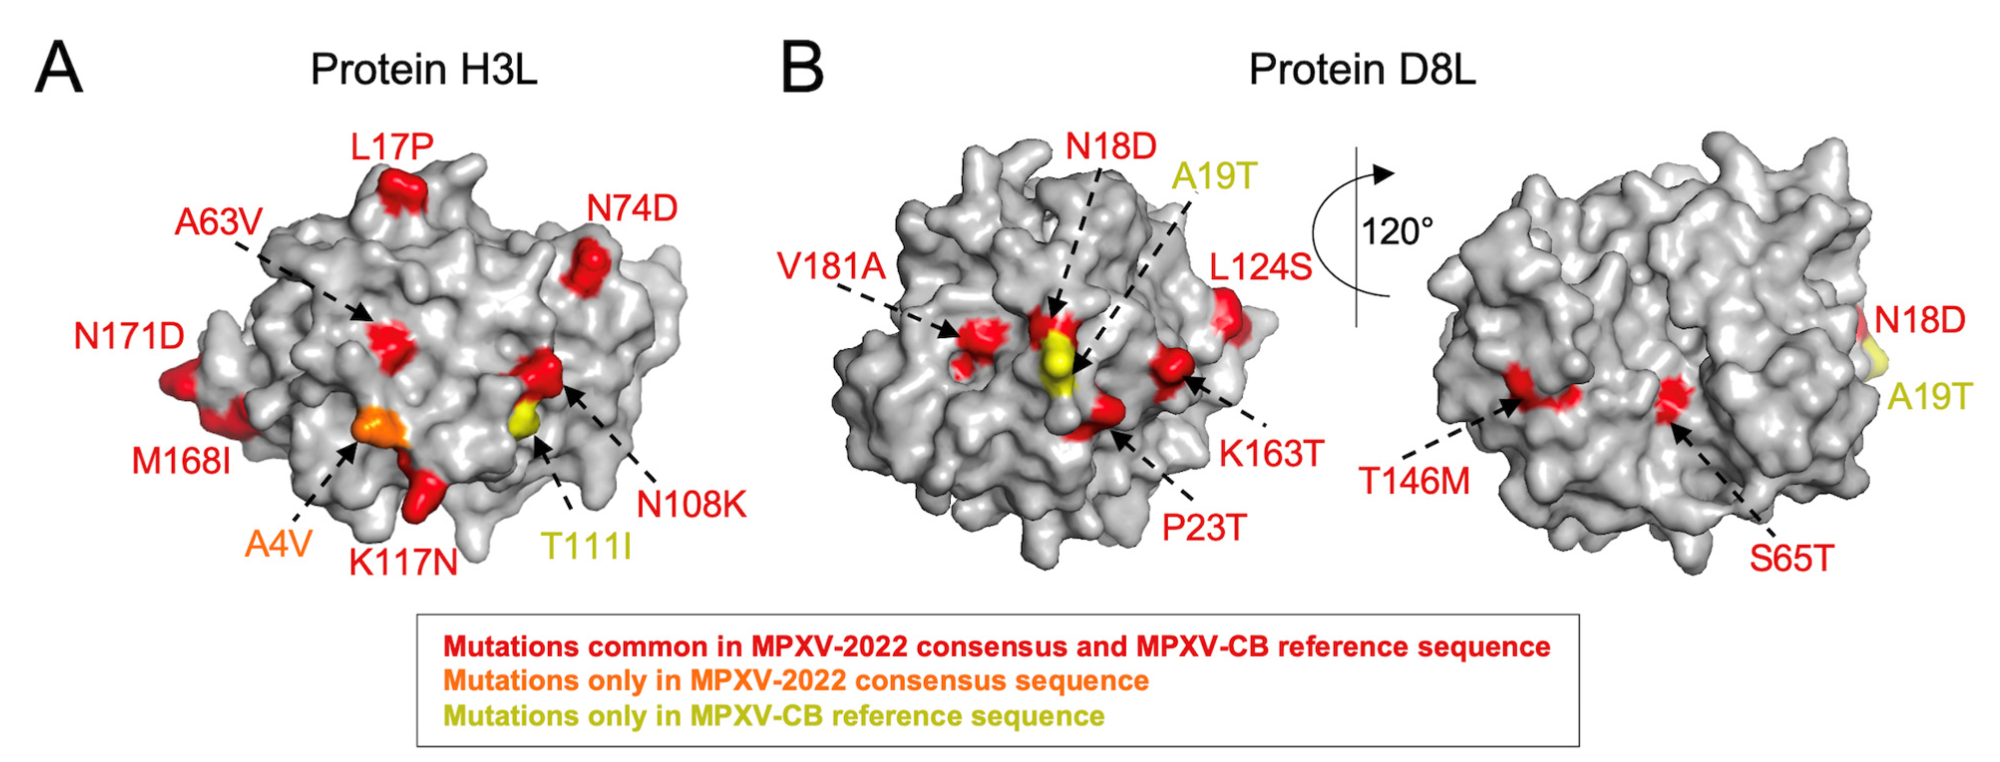 Mapeo de las mutaciones observadas en MPXV-2022 y MPXV-CB en la estructura disponible de VACV(A)H3L. [PDB ID: 5EJ0] y (b) D8L [PDB ID: 4E9O] proteínas de superficie.  La estructura primaria de cada proteína se muestra en gris, mientras que las mutaciones y sus marcadores están coloreados según el esquema de la leyenda.